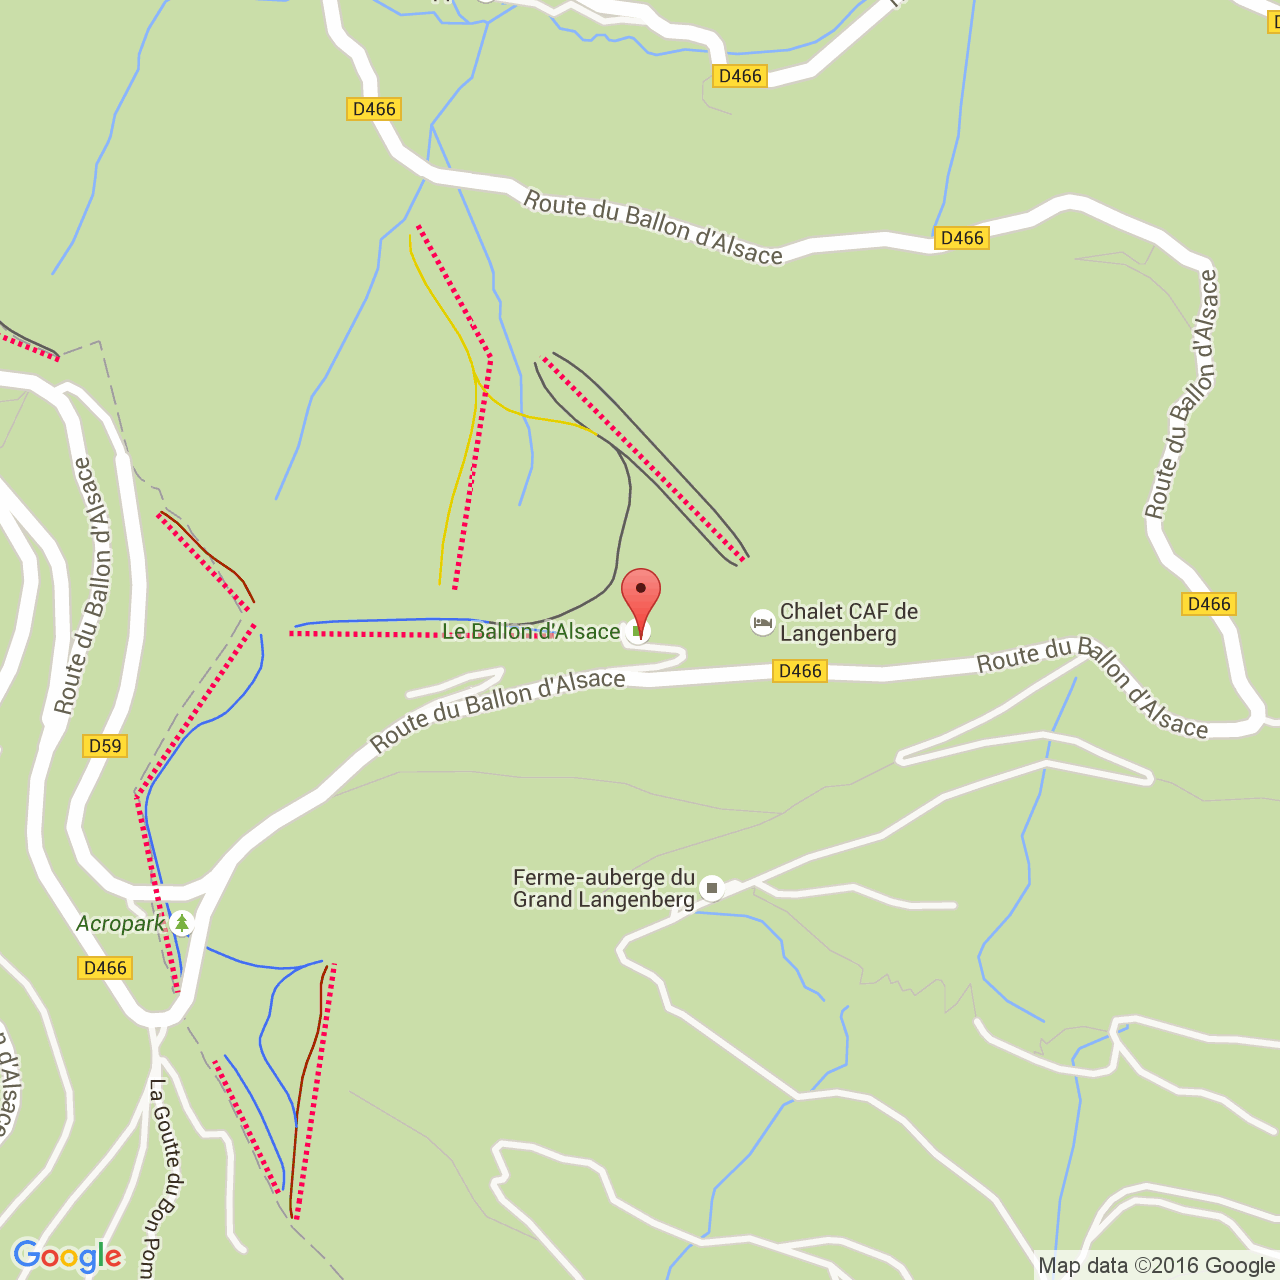 Verlating diepte Scepticisme Ferme auberge du Langenberg dans les Vosges: ski, raquettes, randonnée,  VTT, Acropark dans la Vallée de Masevaux en Alsace